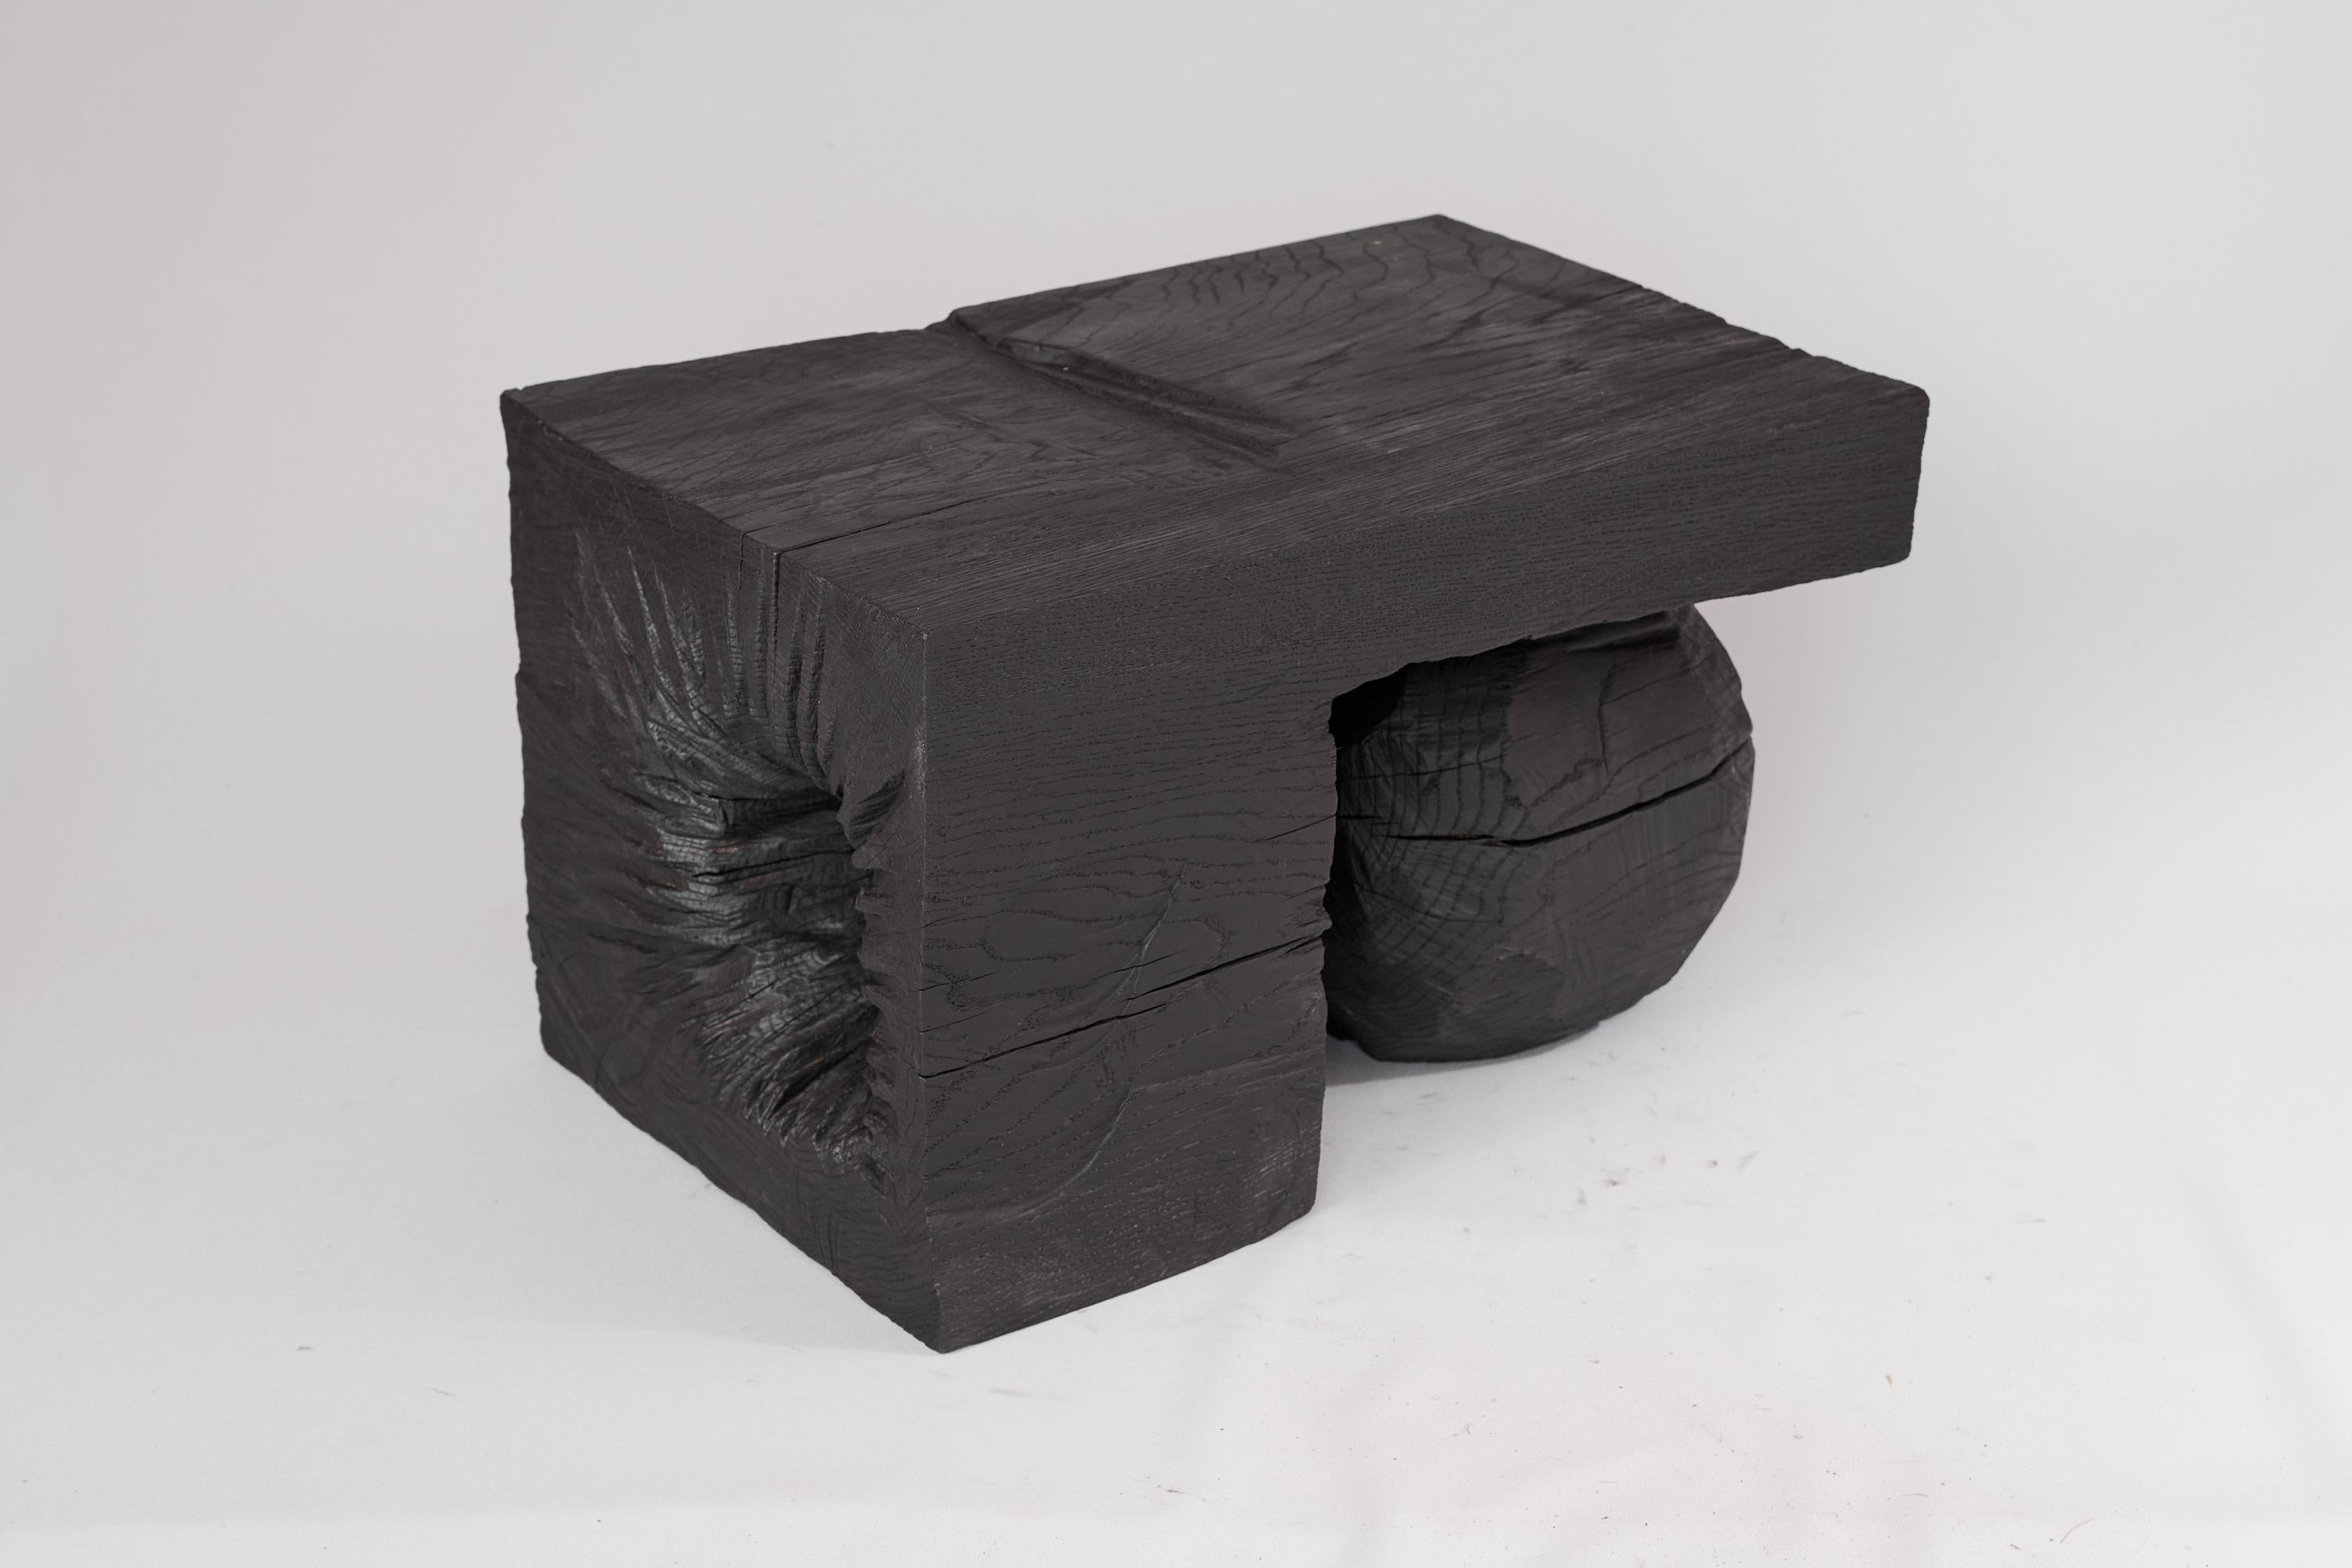 Sculpture fonctionnelle unique en bois sculpté à la tronçonneuse, utilisable comme pièce multifonctionnelle telle qu'une table d'appoint. Sculpté dans une seule pièce de bois et protégé par des huiles de la plus haute qualité, il est durable pour